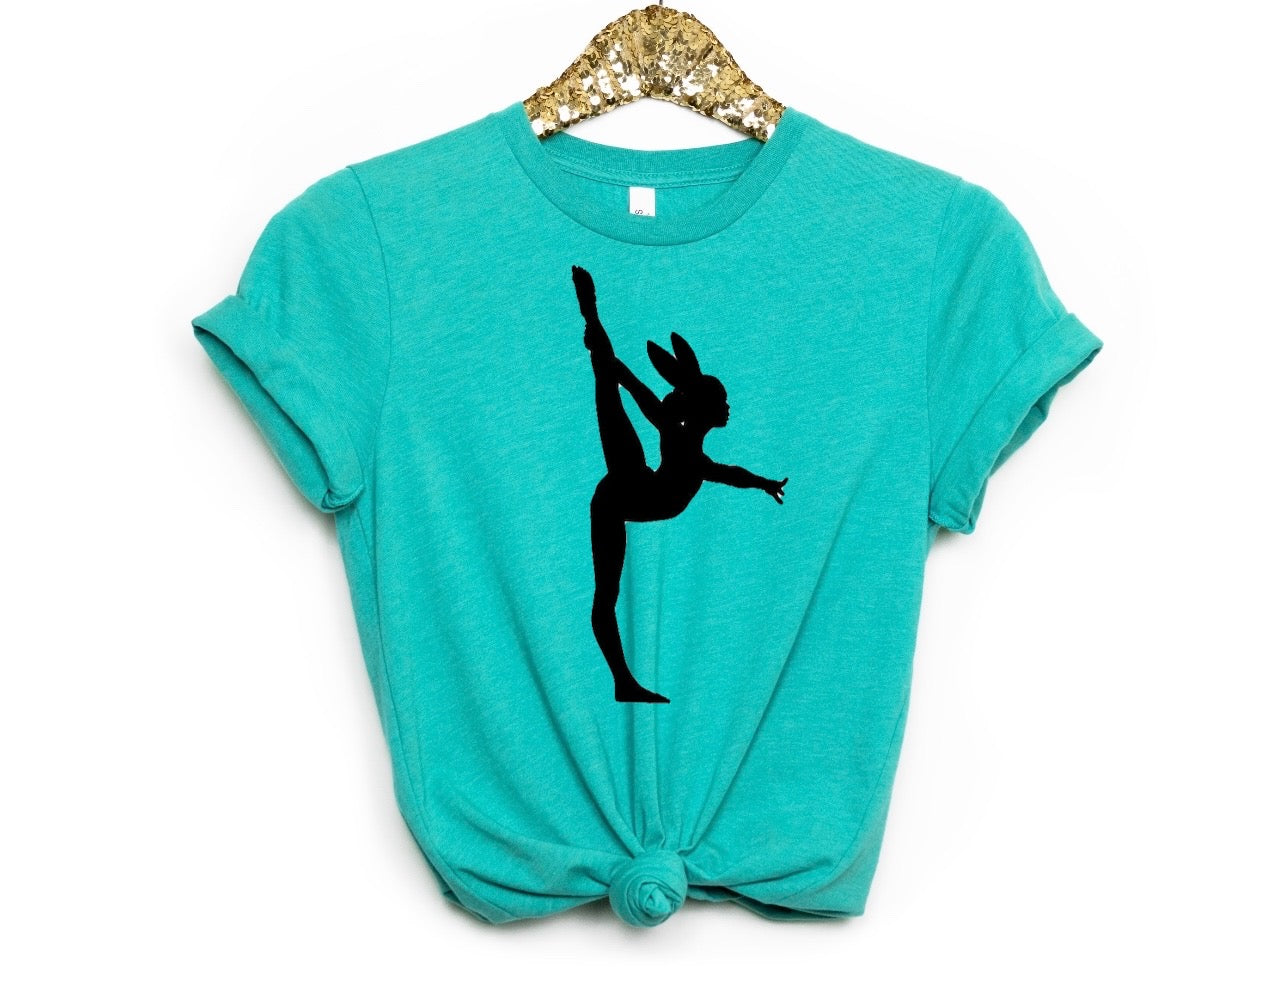 Easter Gymnastics  shirt| Funny alphabet shirt| teacher shirt| Funny shirt| mom life shirt| Sarcastic shirt| funny shirt, mom shirt, teacher gift